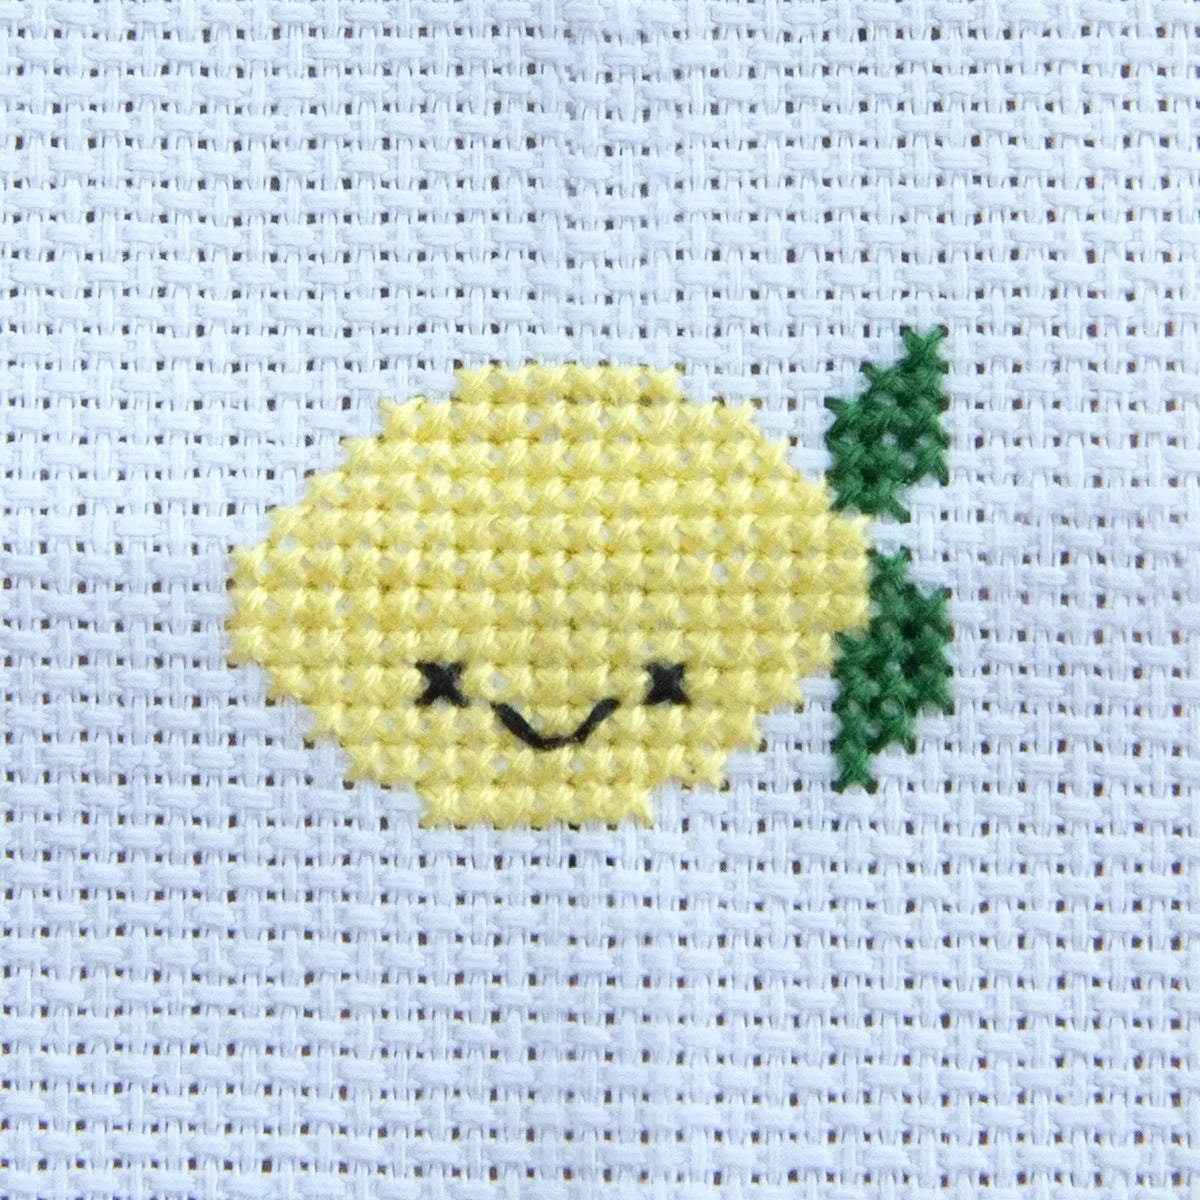 Lemon | Kawaii Kross Stitch in a Matchbox